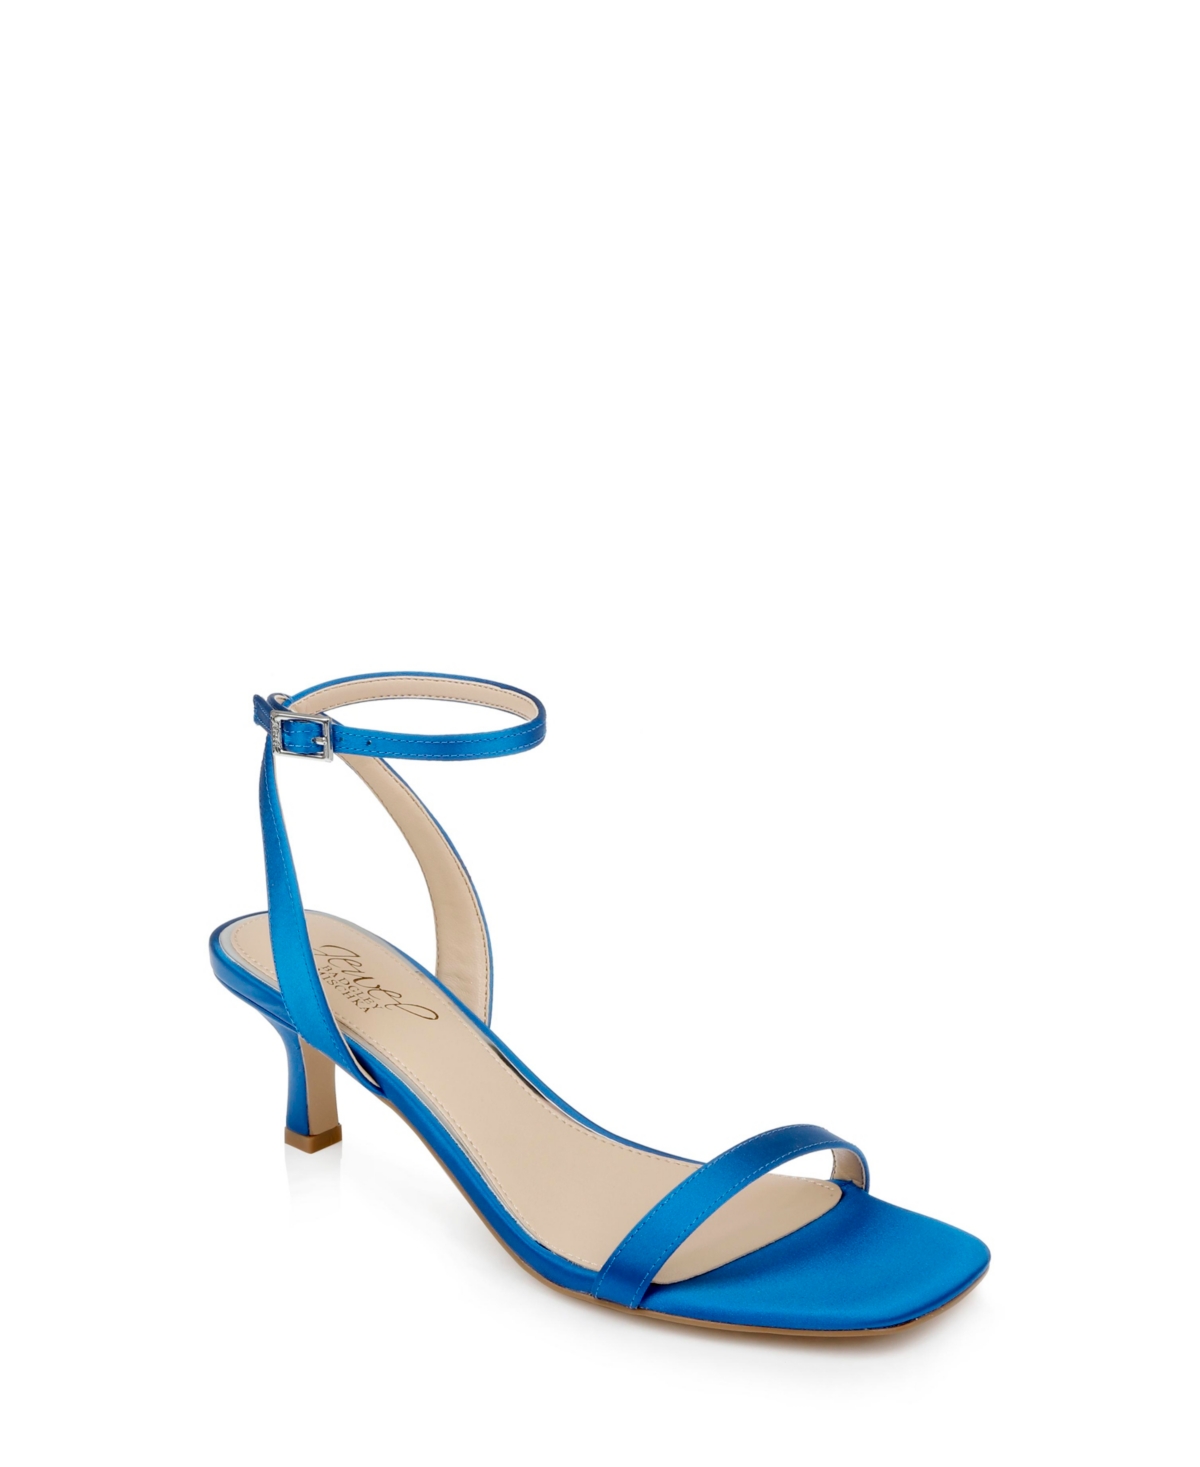 Shop Jewel Badgley Mischka Women's Charisma Ii Kitten Heel Evening Sandals In Blue Satin